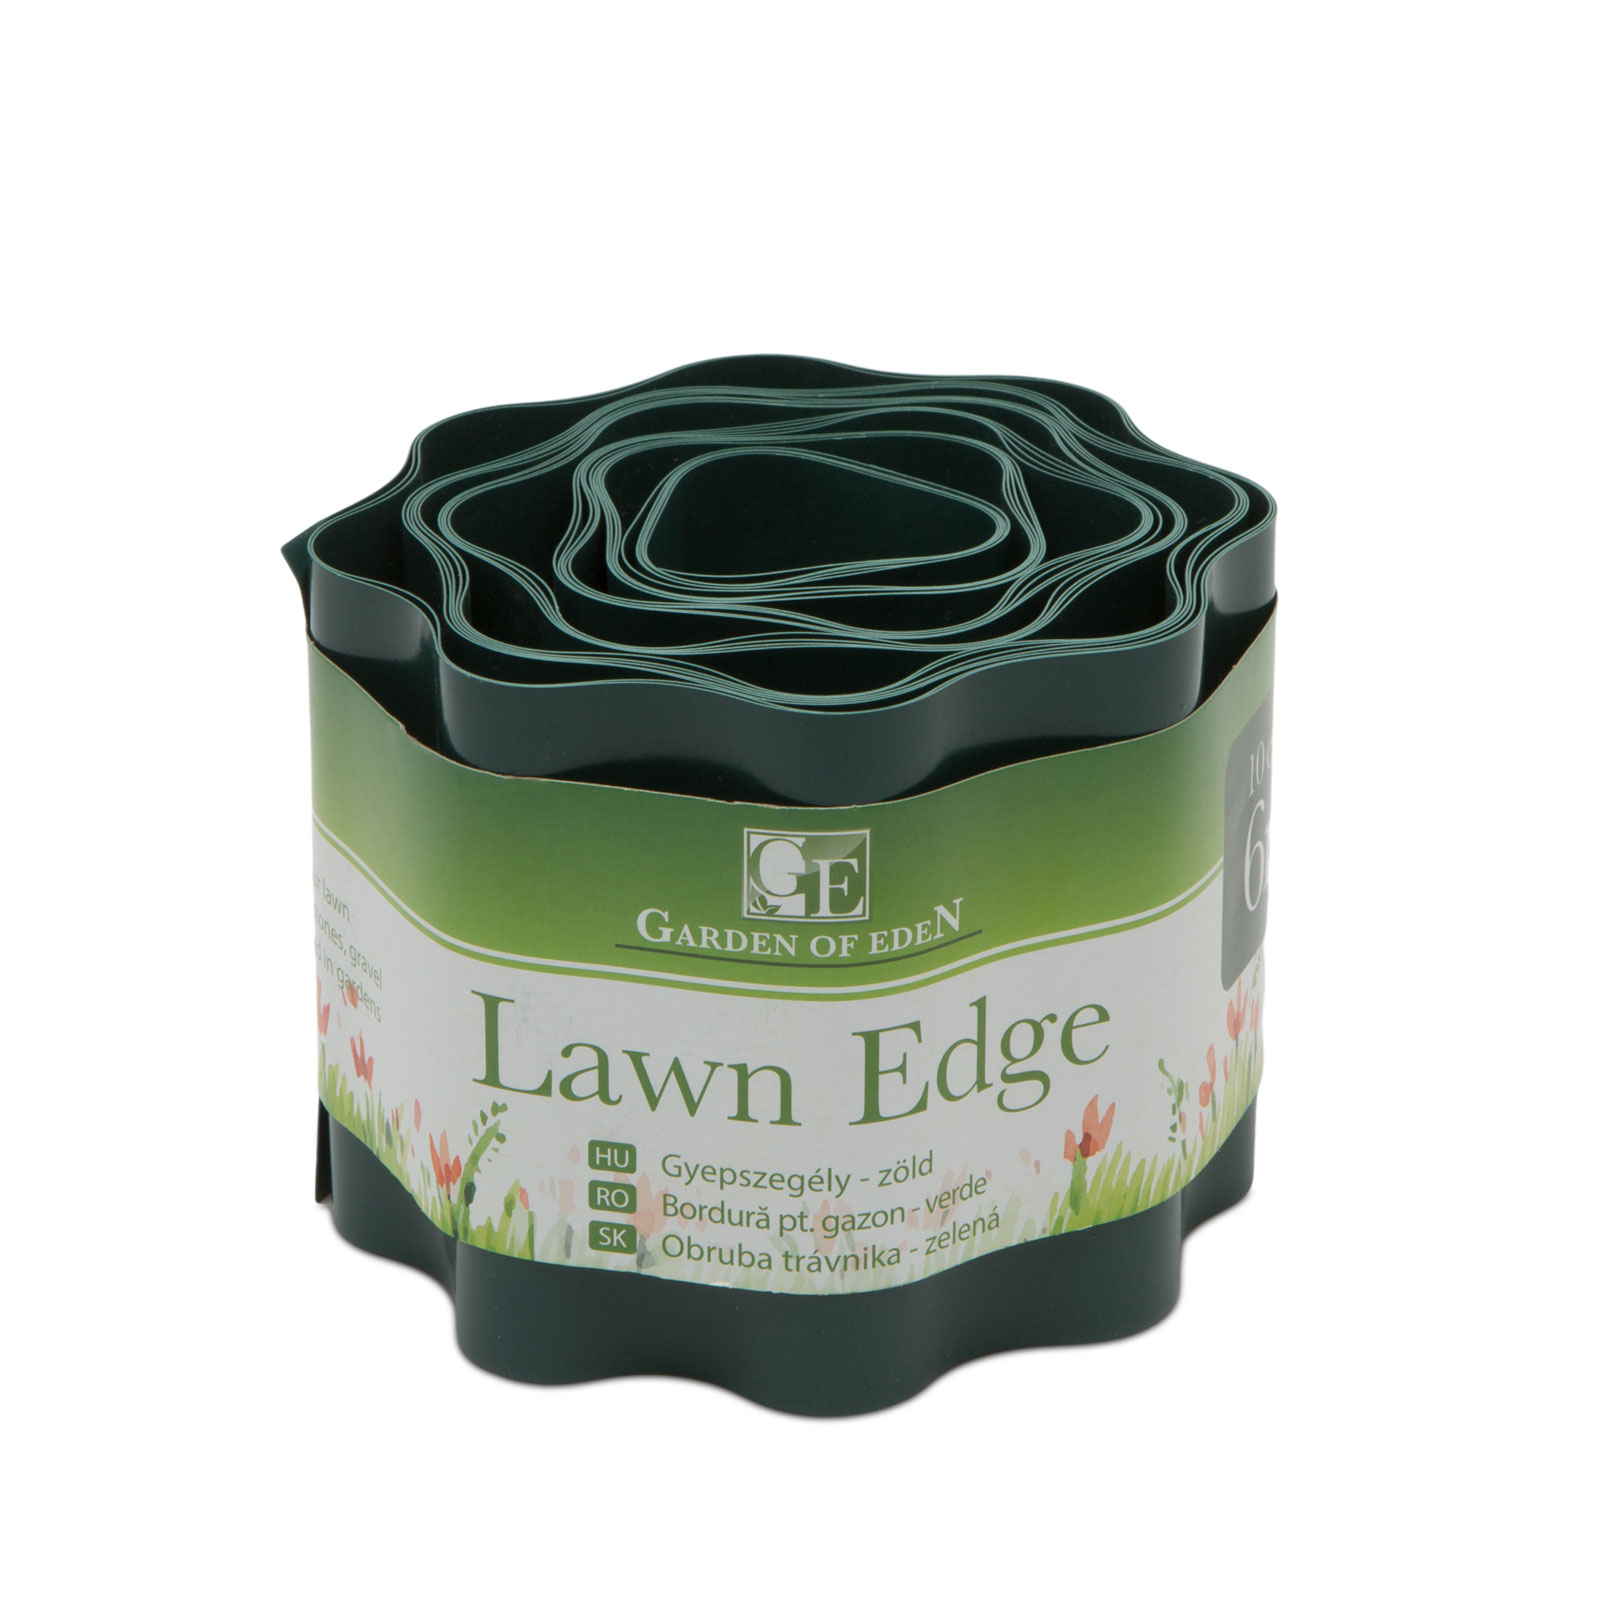 Lawn edge - 6 m - green thumb